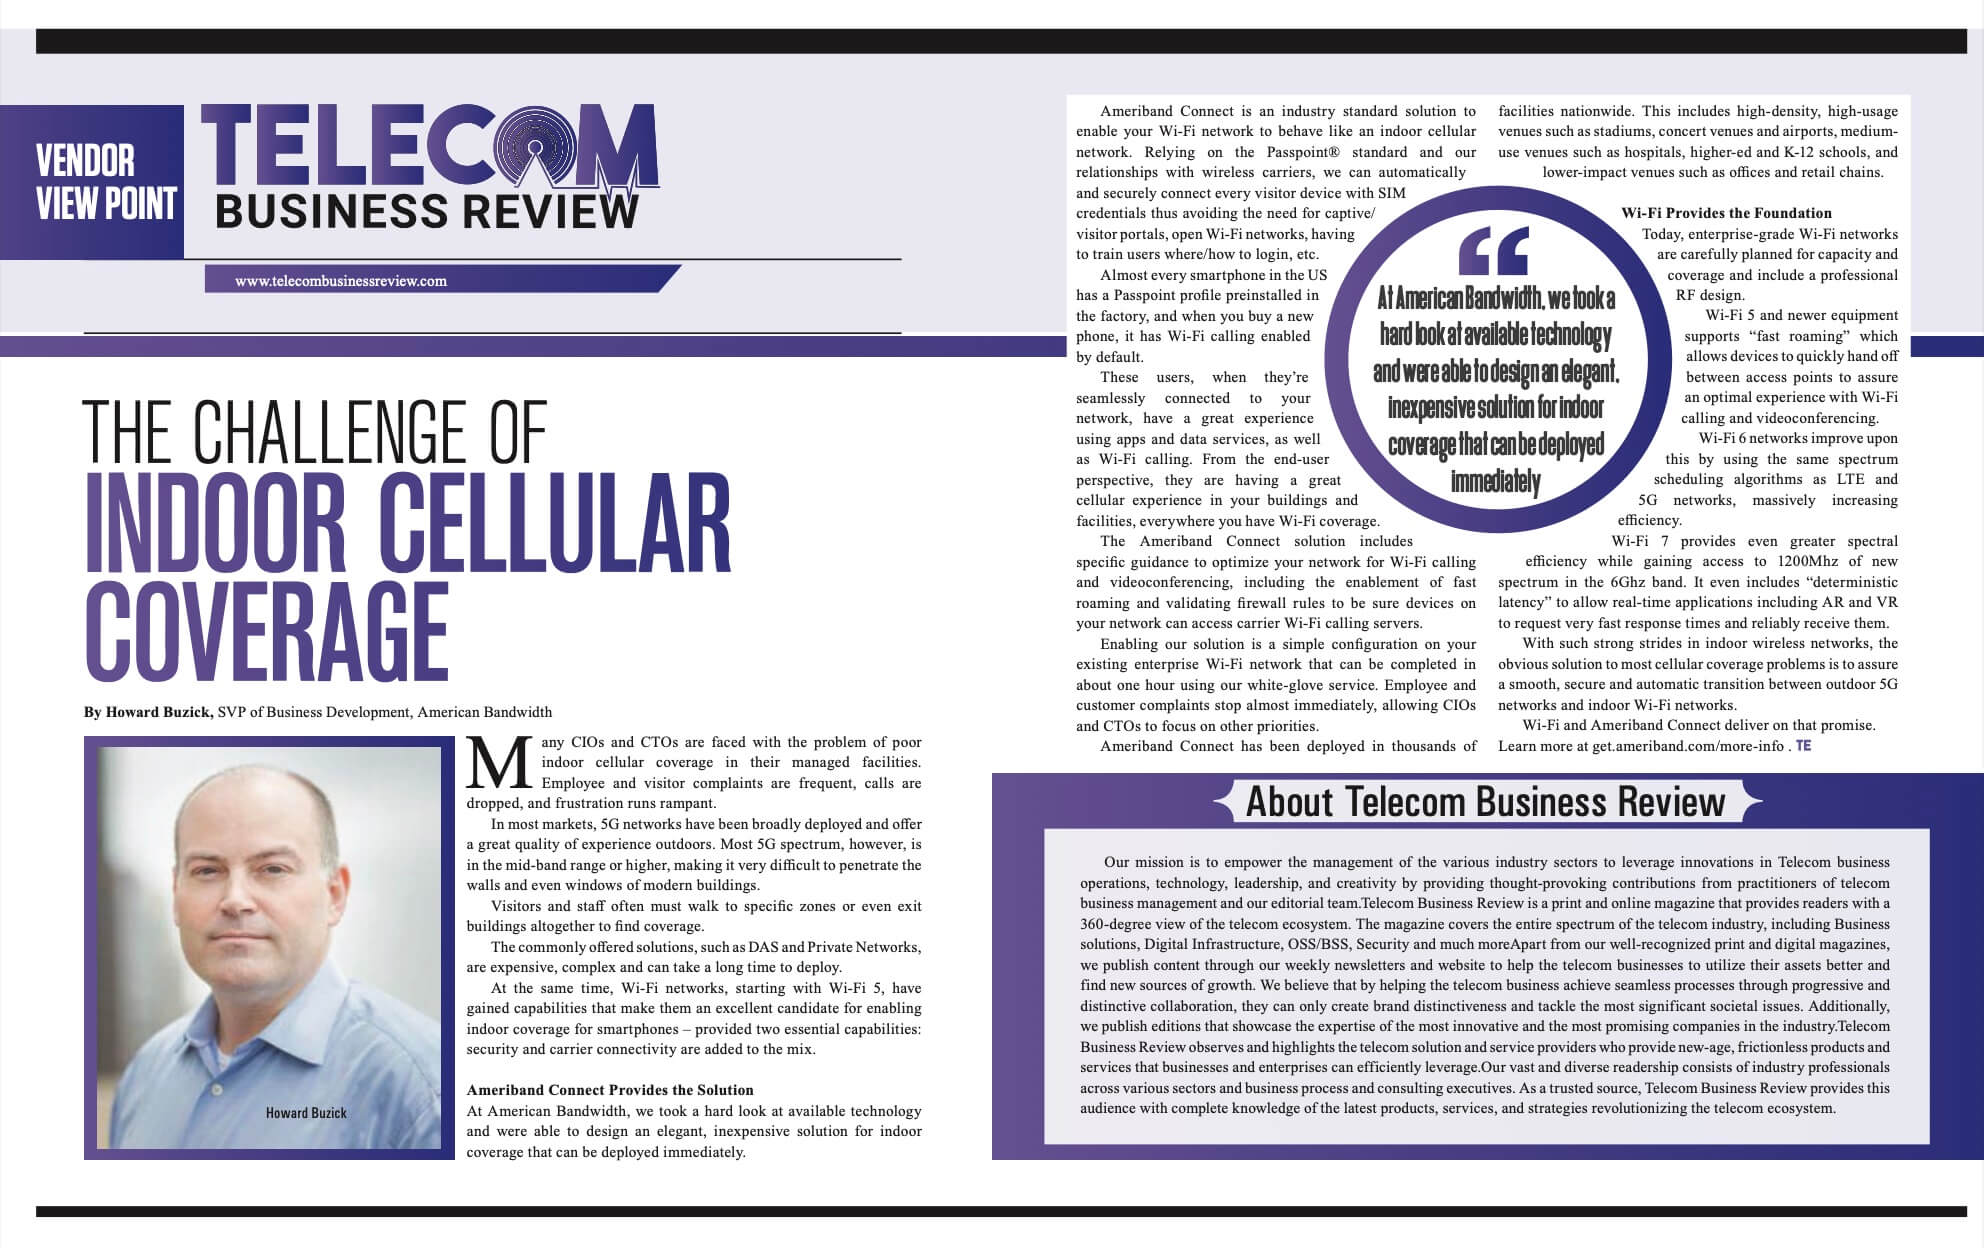 Telecom Business Review